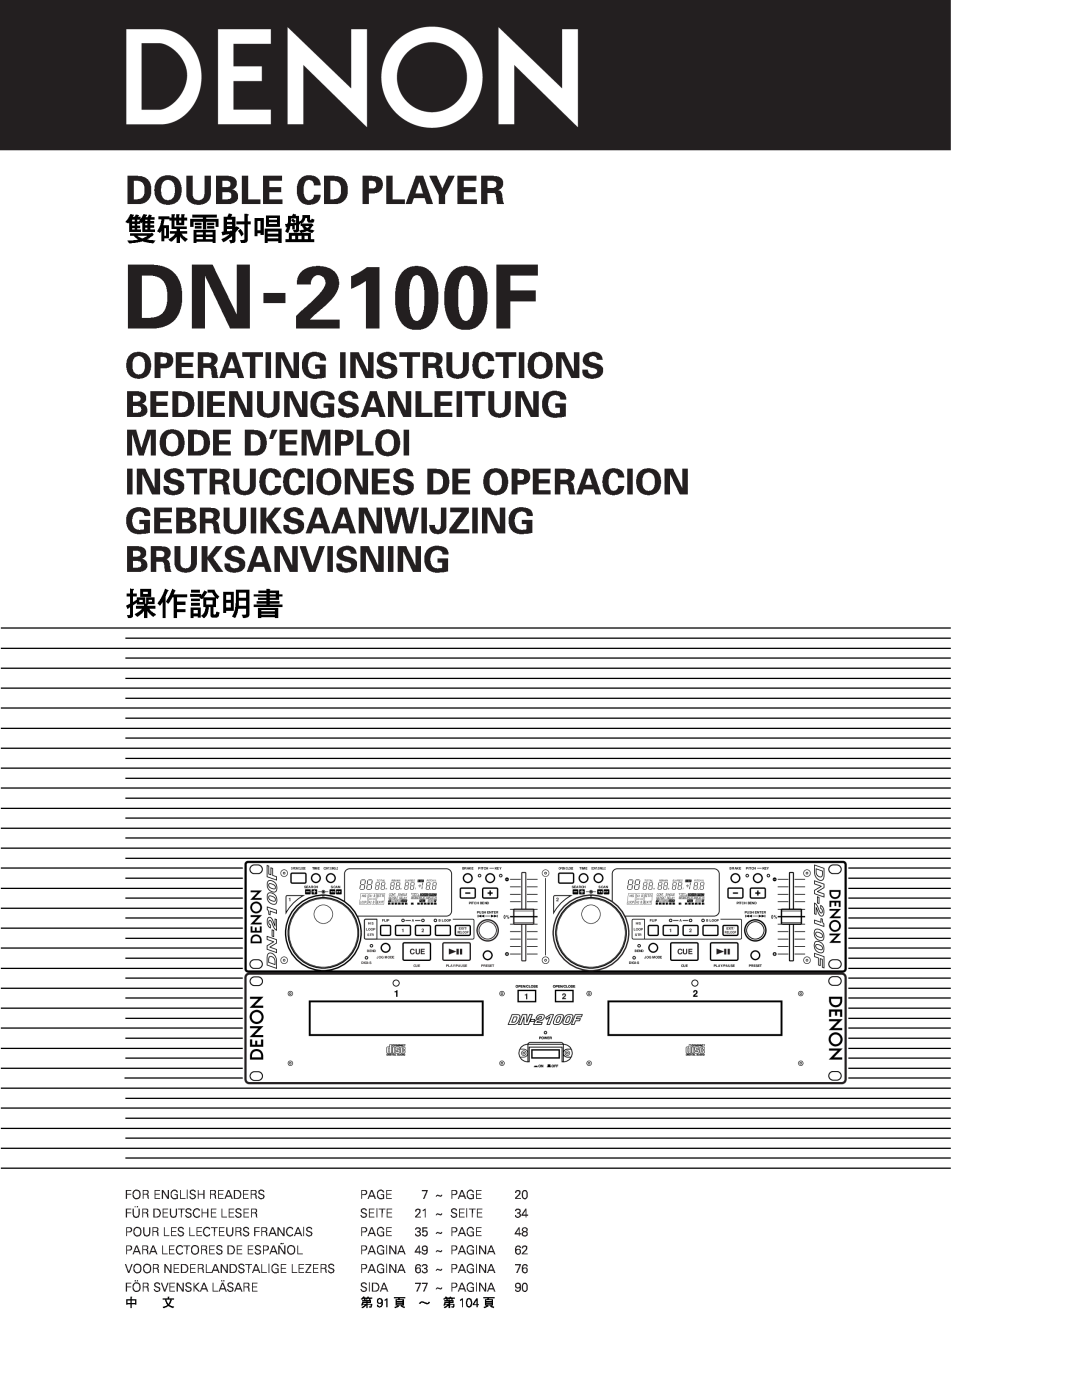 Denon DN-2100F operating instructions Operating Instructions Bedienungsanleitung, Mode D’Emploi Instrucciones De Operacion 